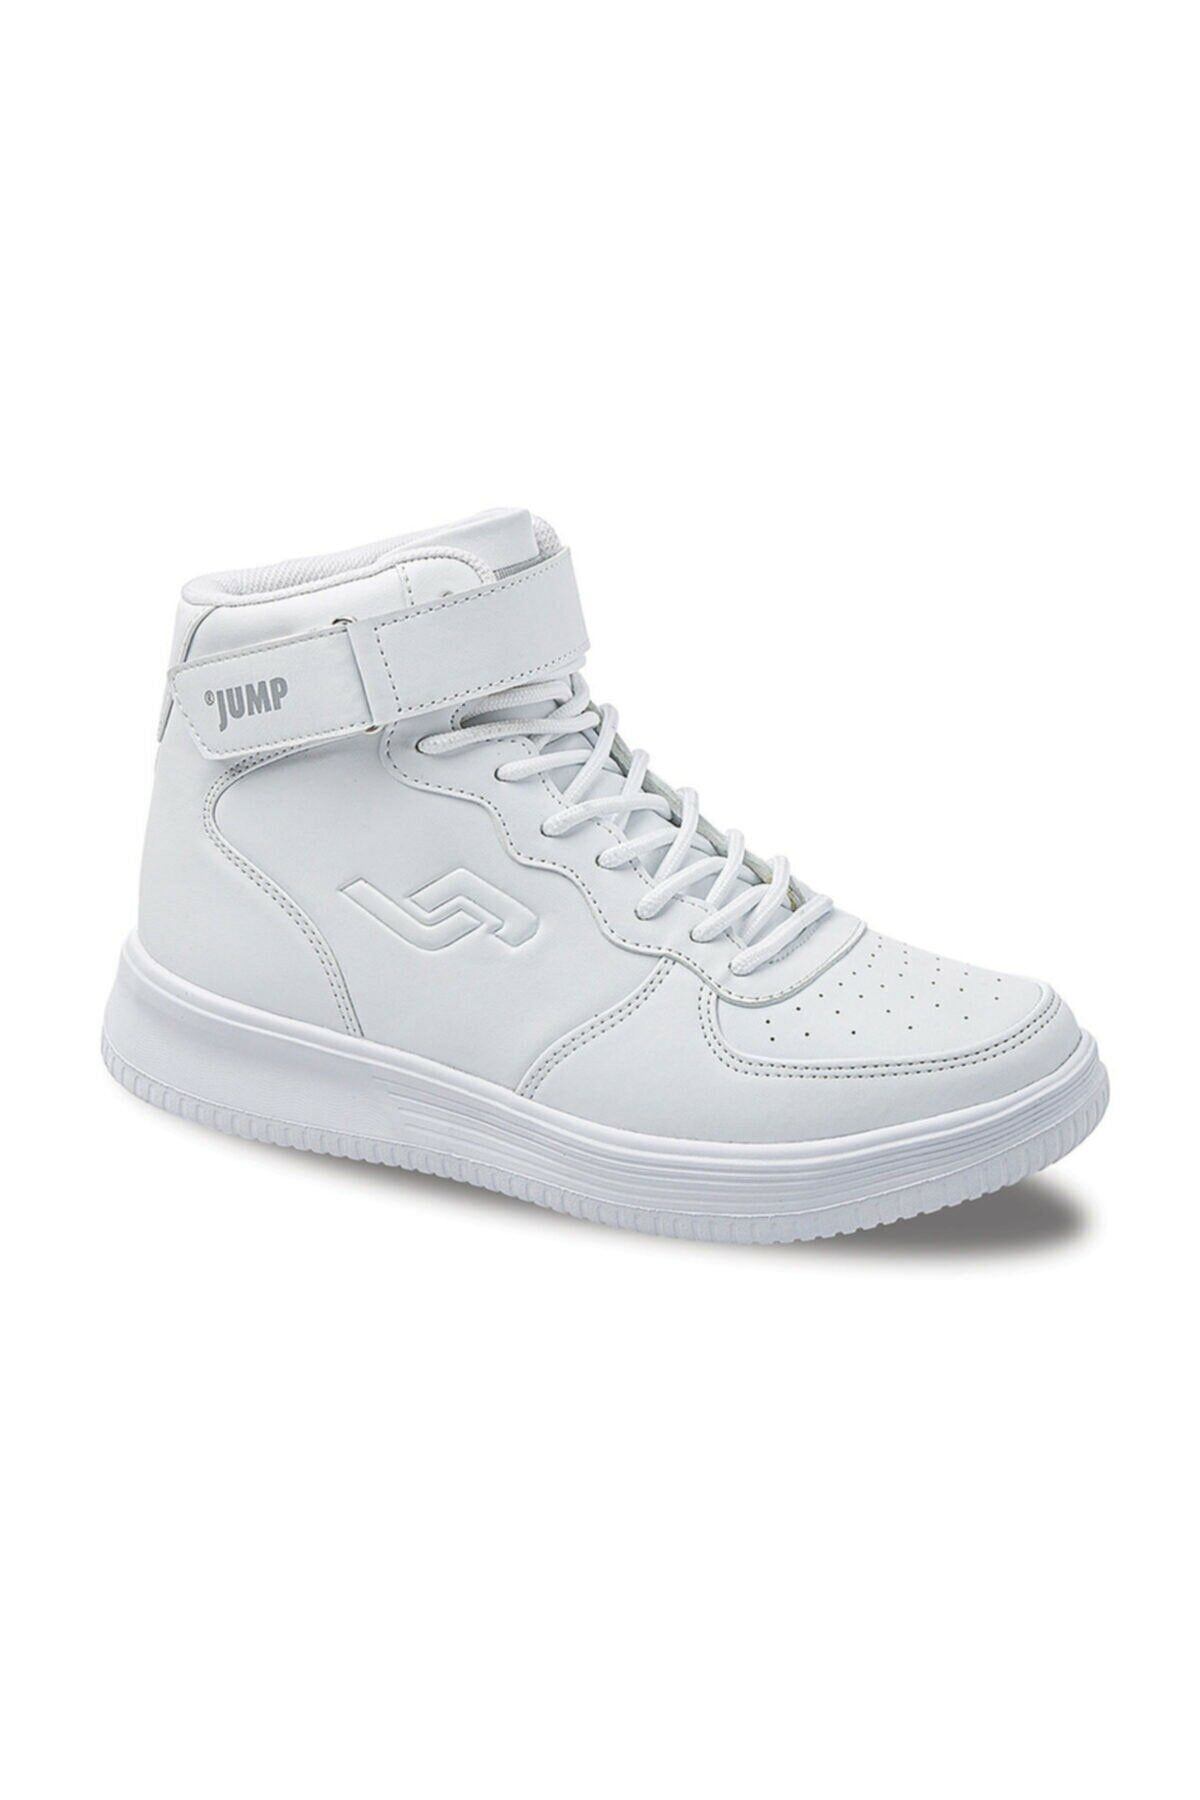 Jump Jordan Bilekli Beyaz Unisex Sport Casual Ayakkabı